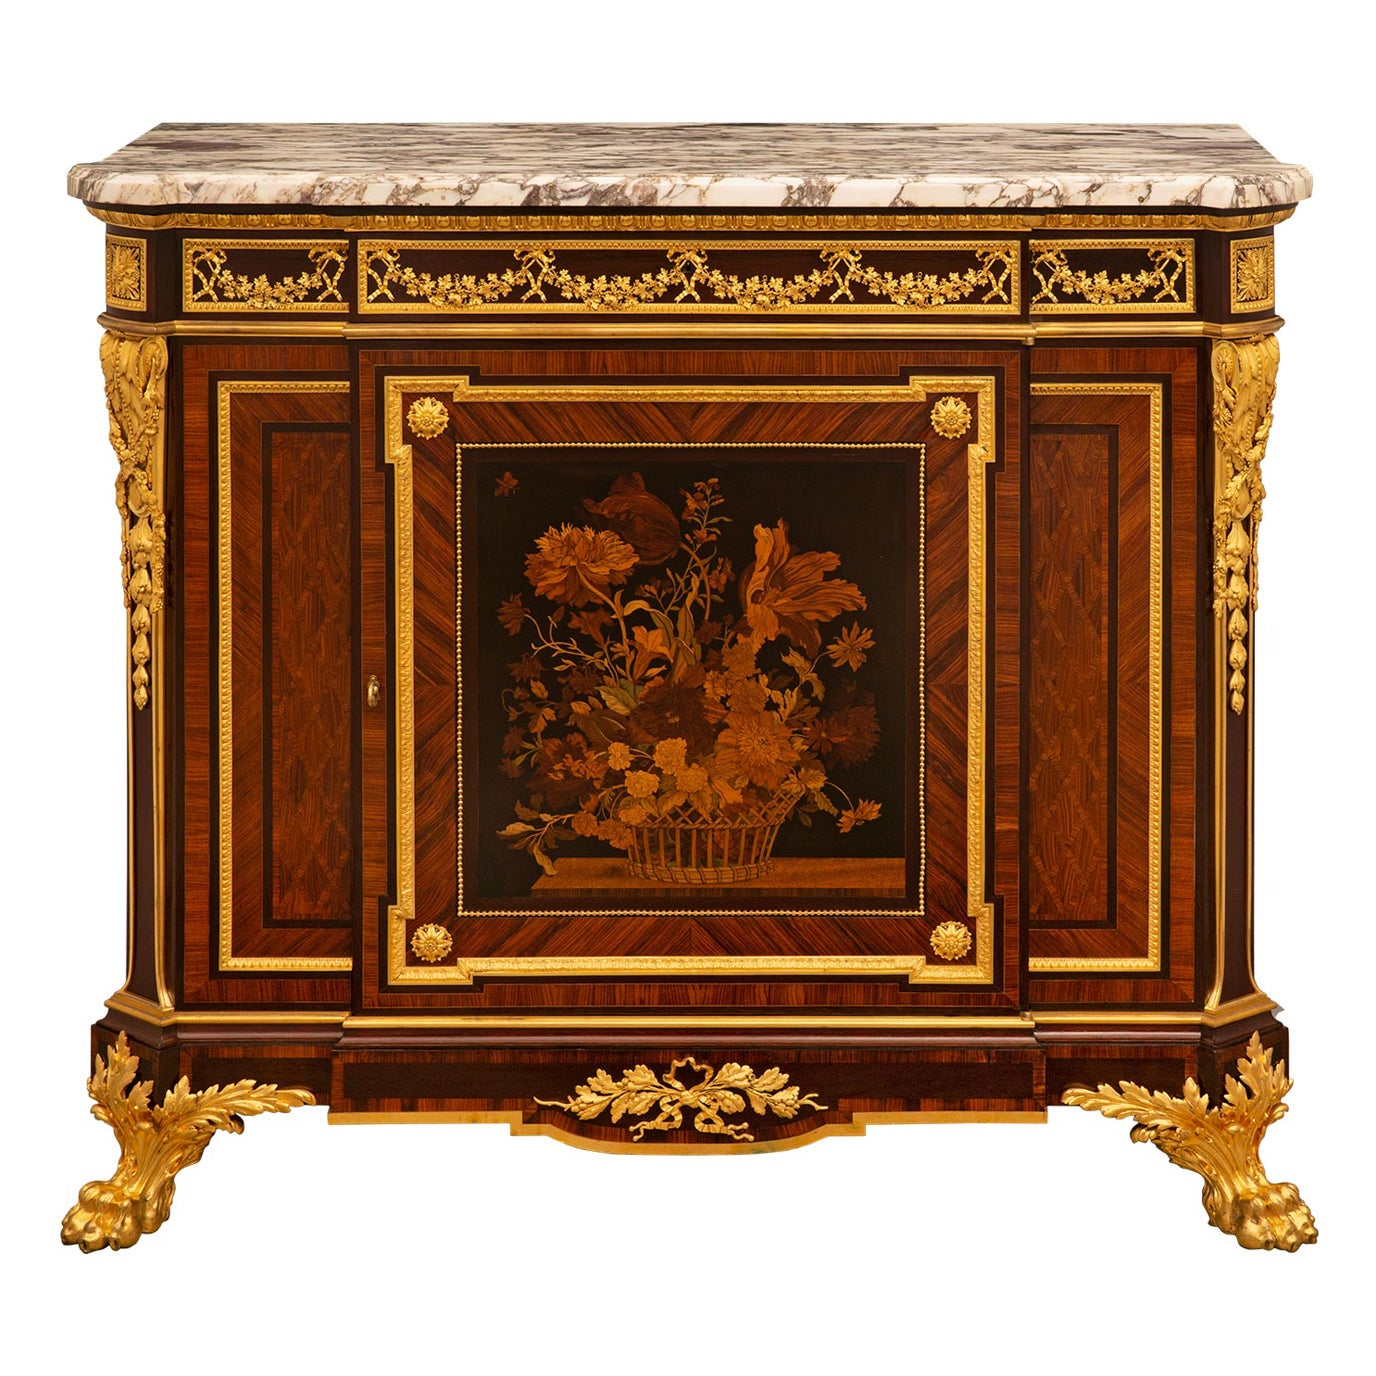 Cabinet de style Louis XVI du 19ème siècle signé Grohé